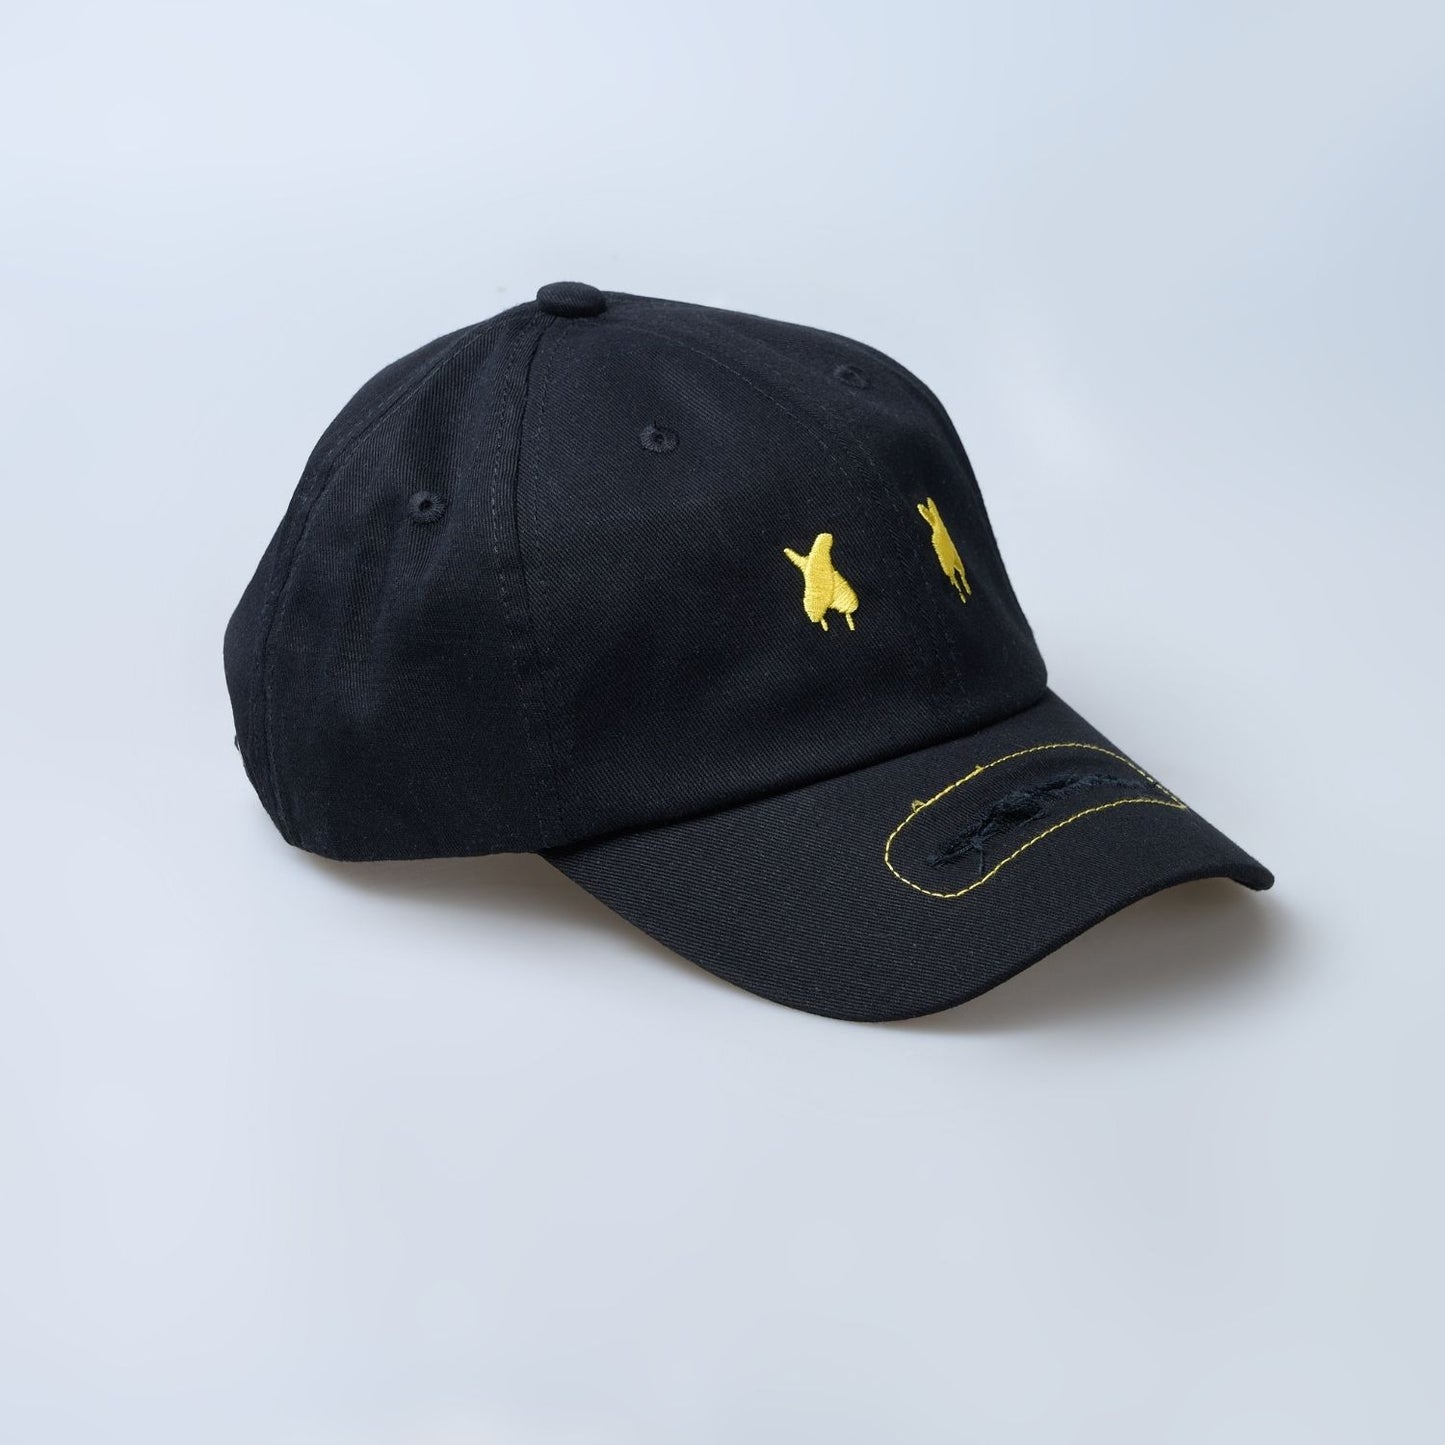 Black colored solid basic cap for men.